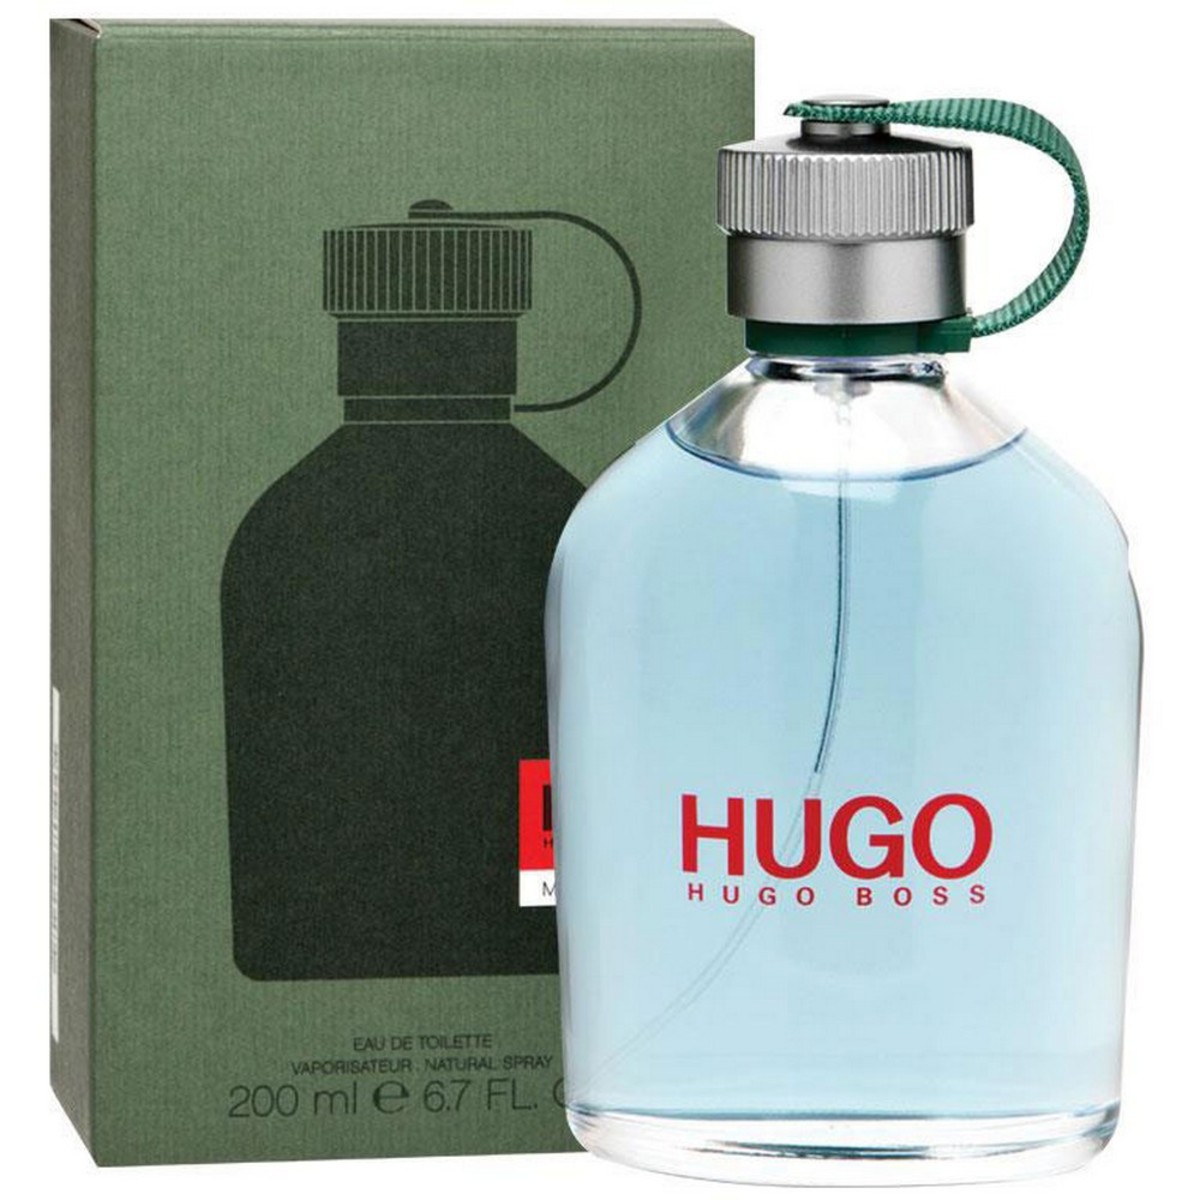 Buy Hugo Boss Green EDT Men 200 ml Online - Lulu Hypermarket UAE